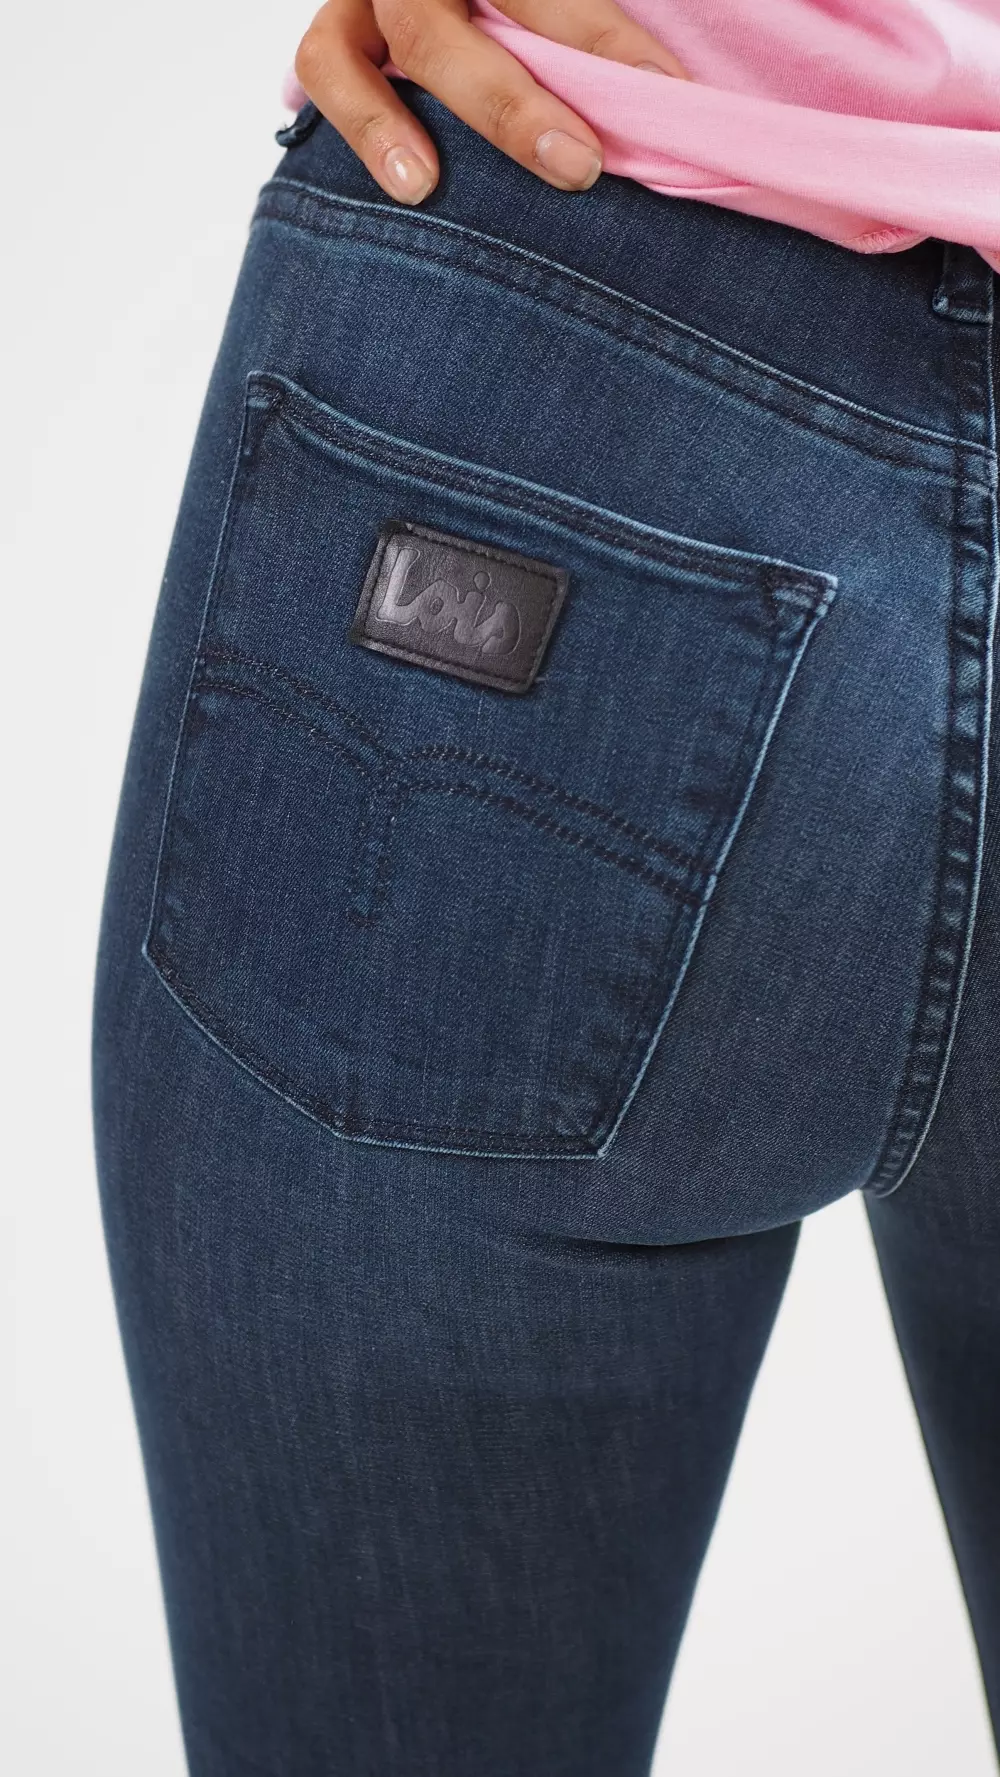 LOCELIA LEIA BEAT 5399 Bukser/Jeans LOIS